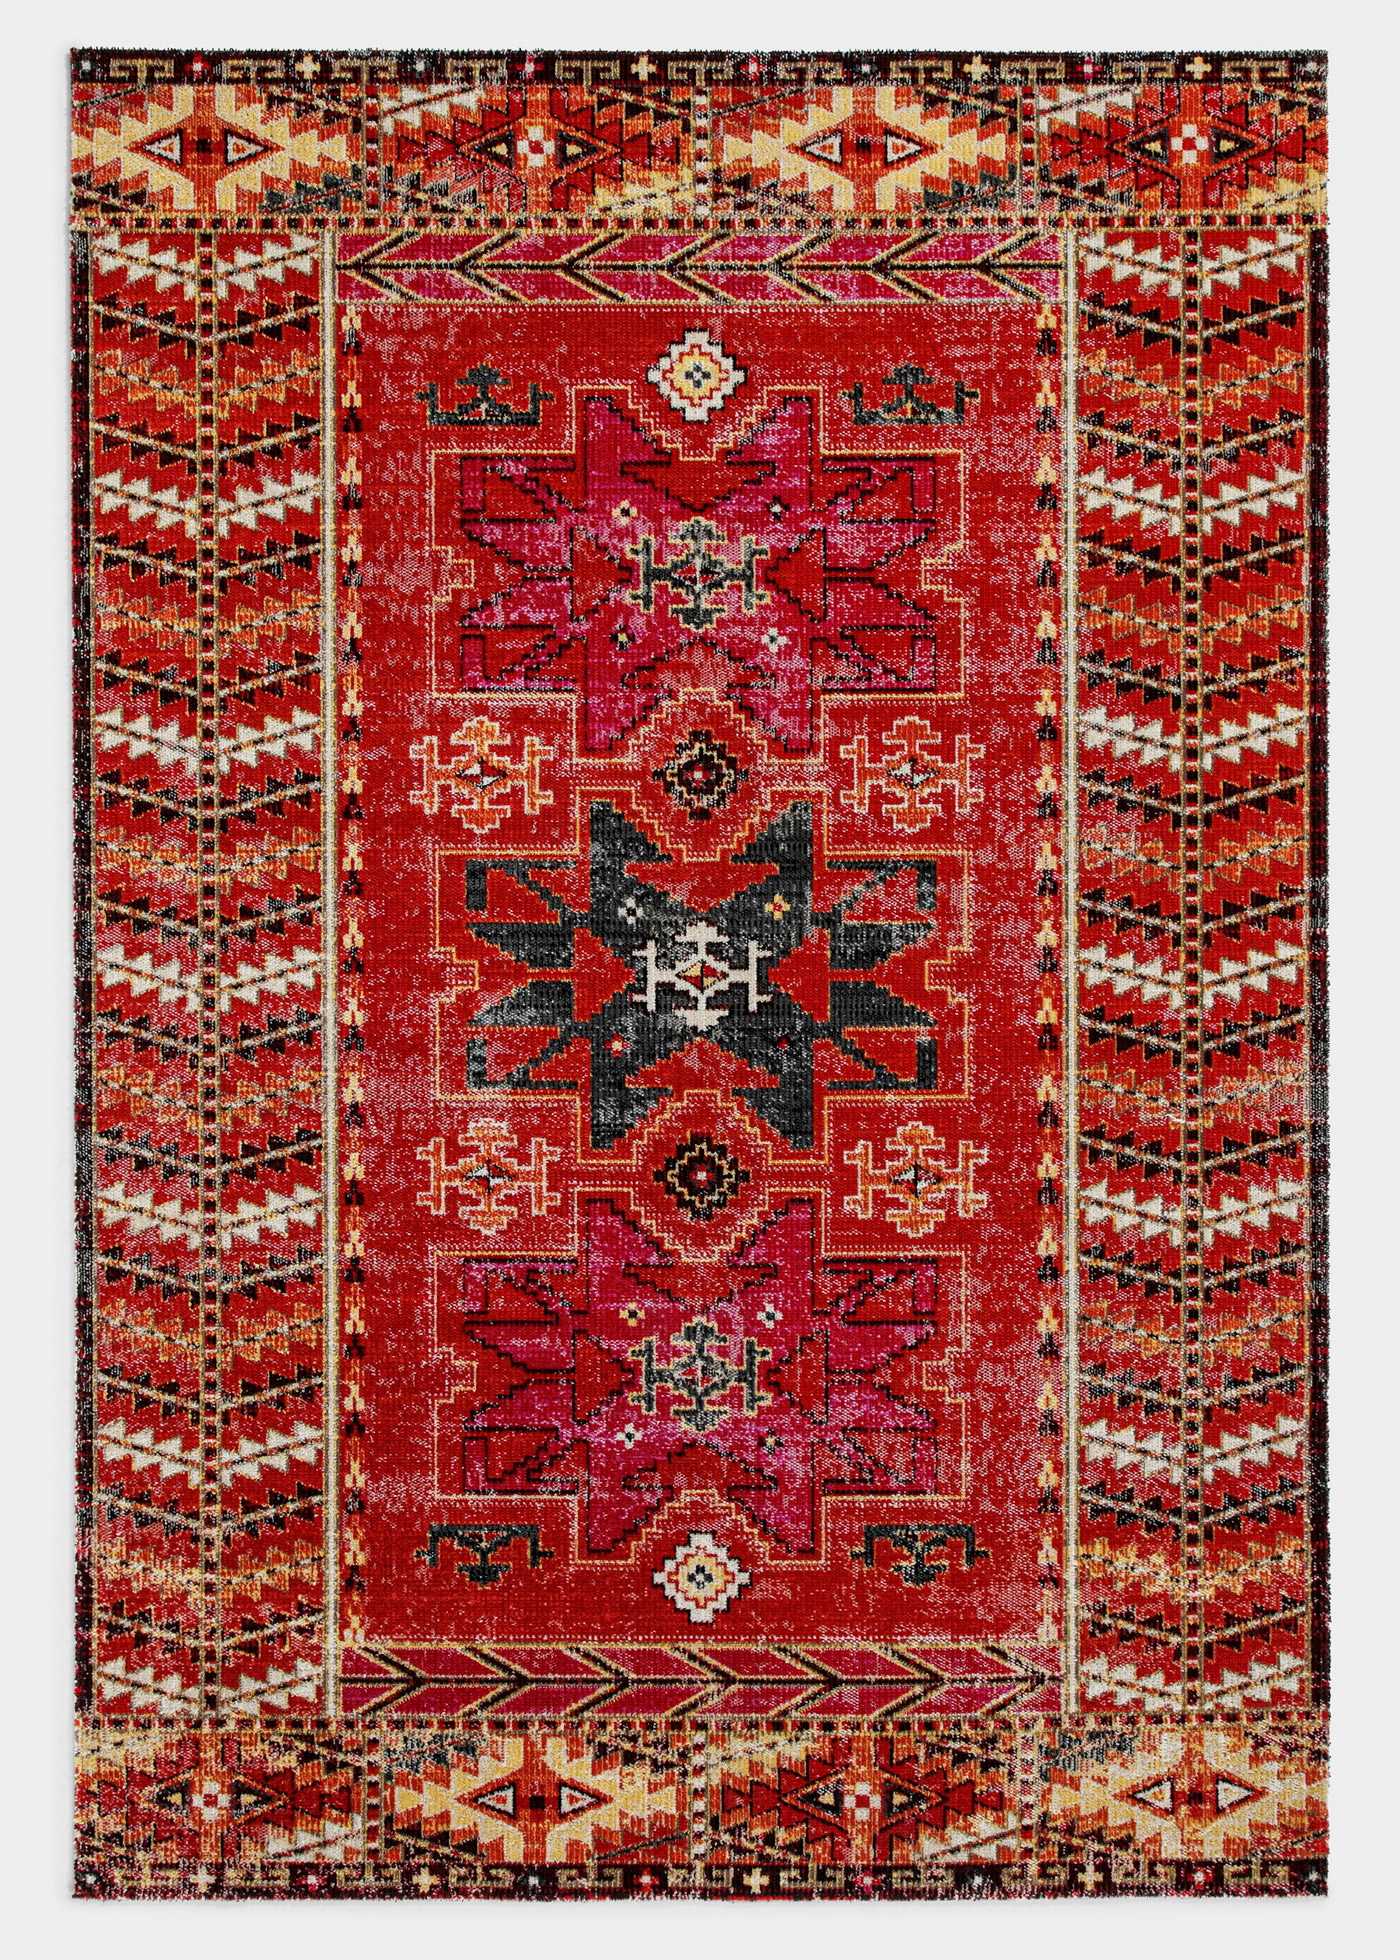 In-und Outdoor Teppich in warmen Farben von bonprix